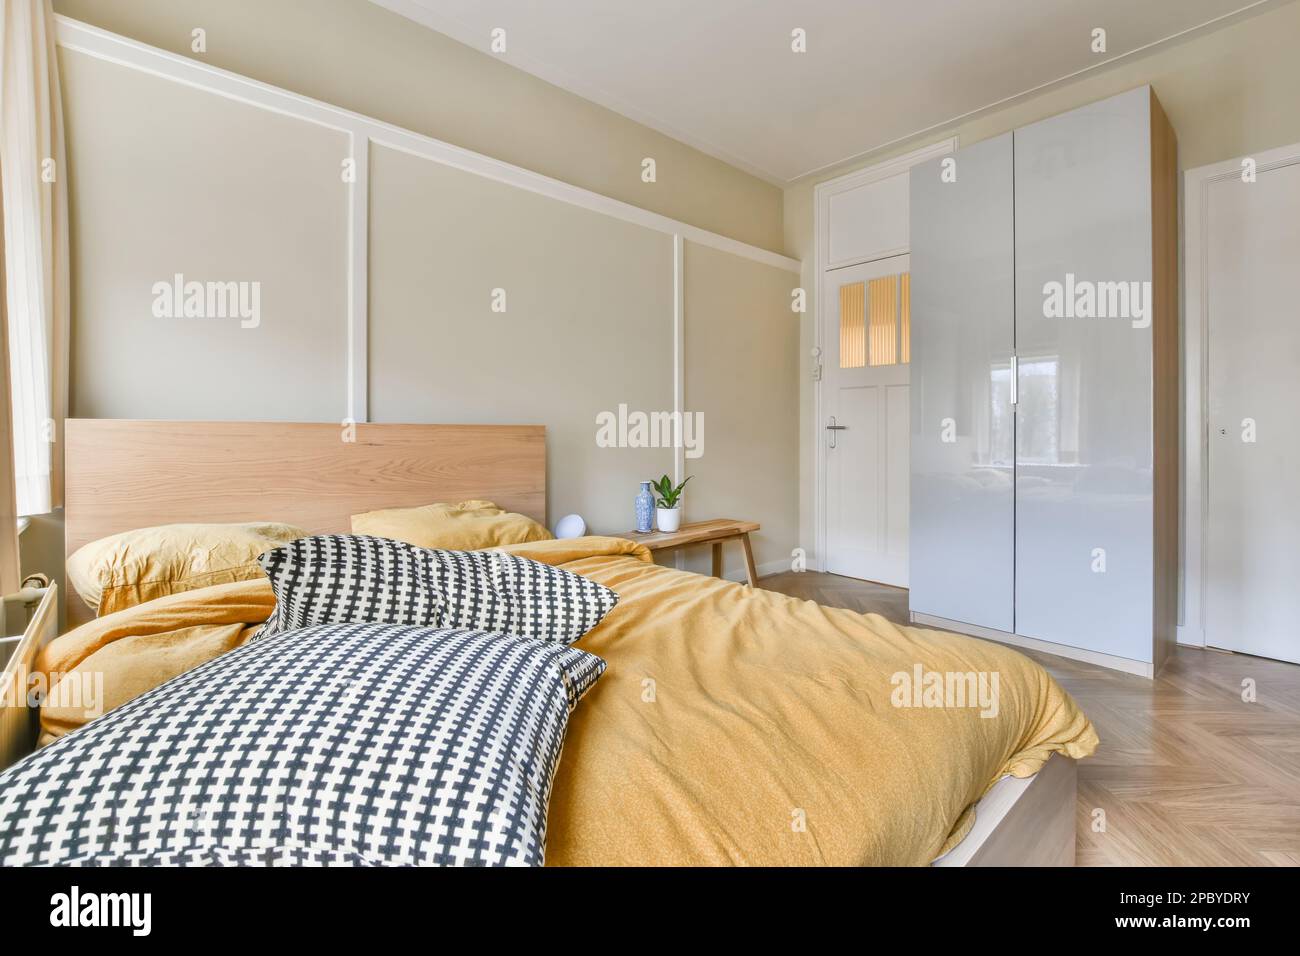 Innendesign des hellen Schlafzimmers mit komfortablem Bett und Nachttisch mit Kleiderschrank Stockfoto